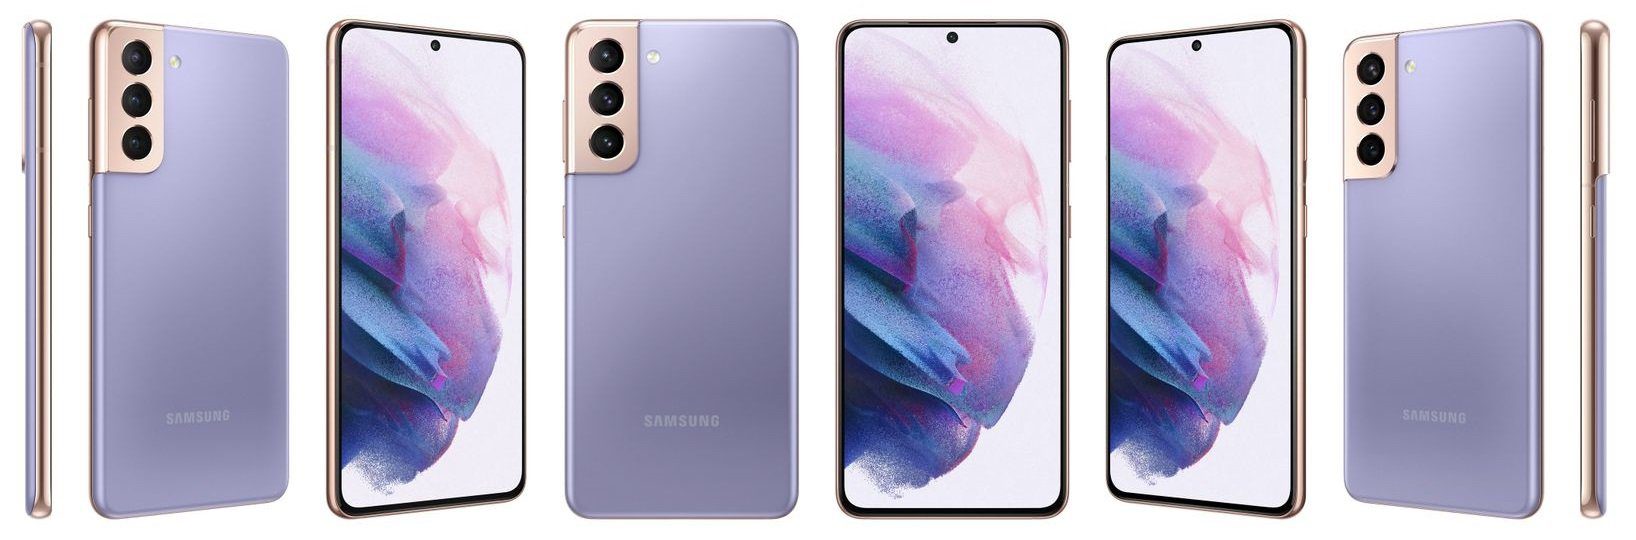 Smartphones aus der Serie Galaxy S21 wird auf Anfrage in weiteren Farben erhältlich sein 5